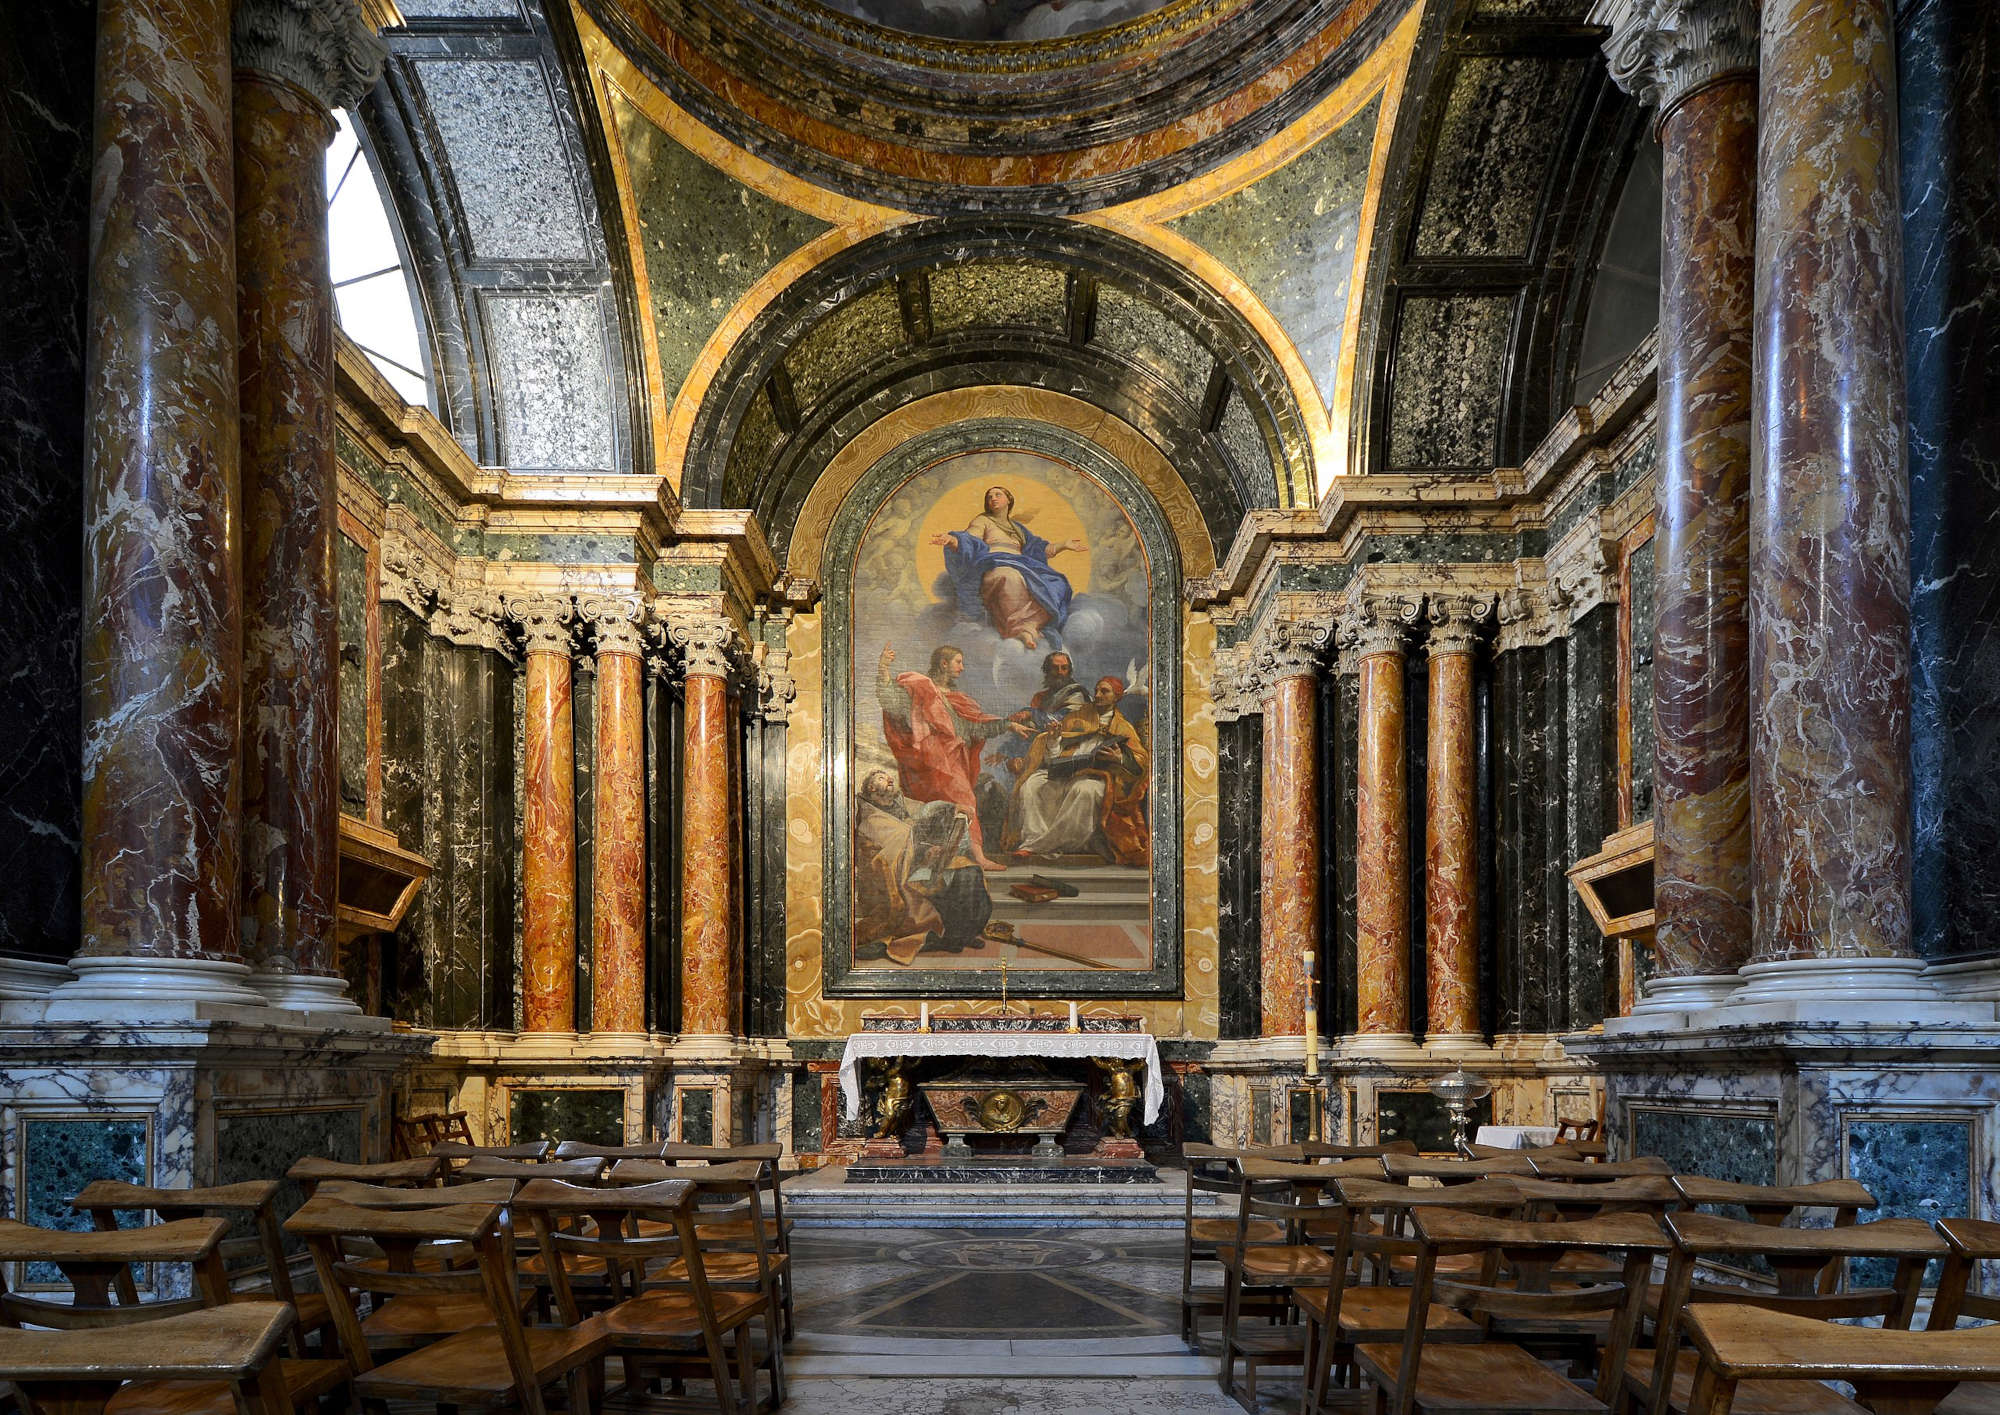 The Cybo Chapel in Santa Maria del Popolo. Photo: Wikimedia/LivioAndronico